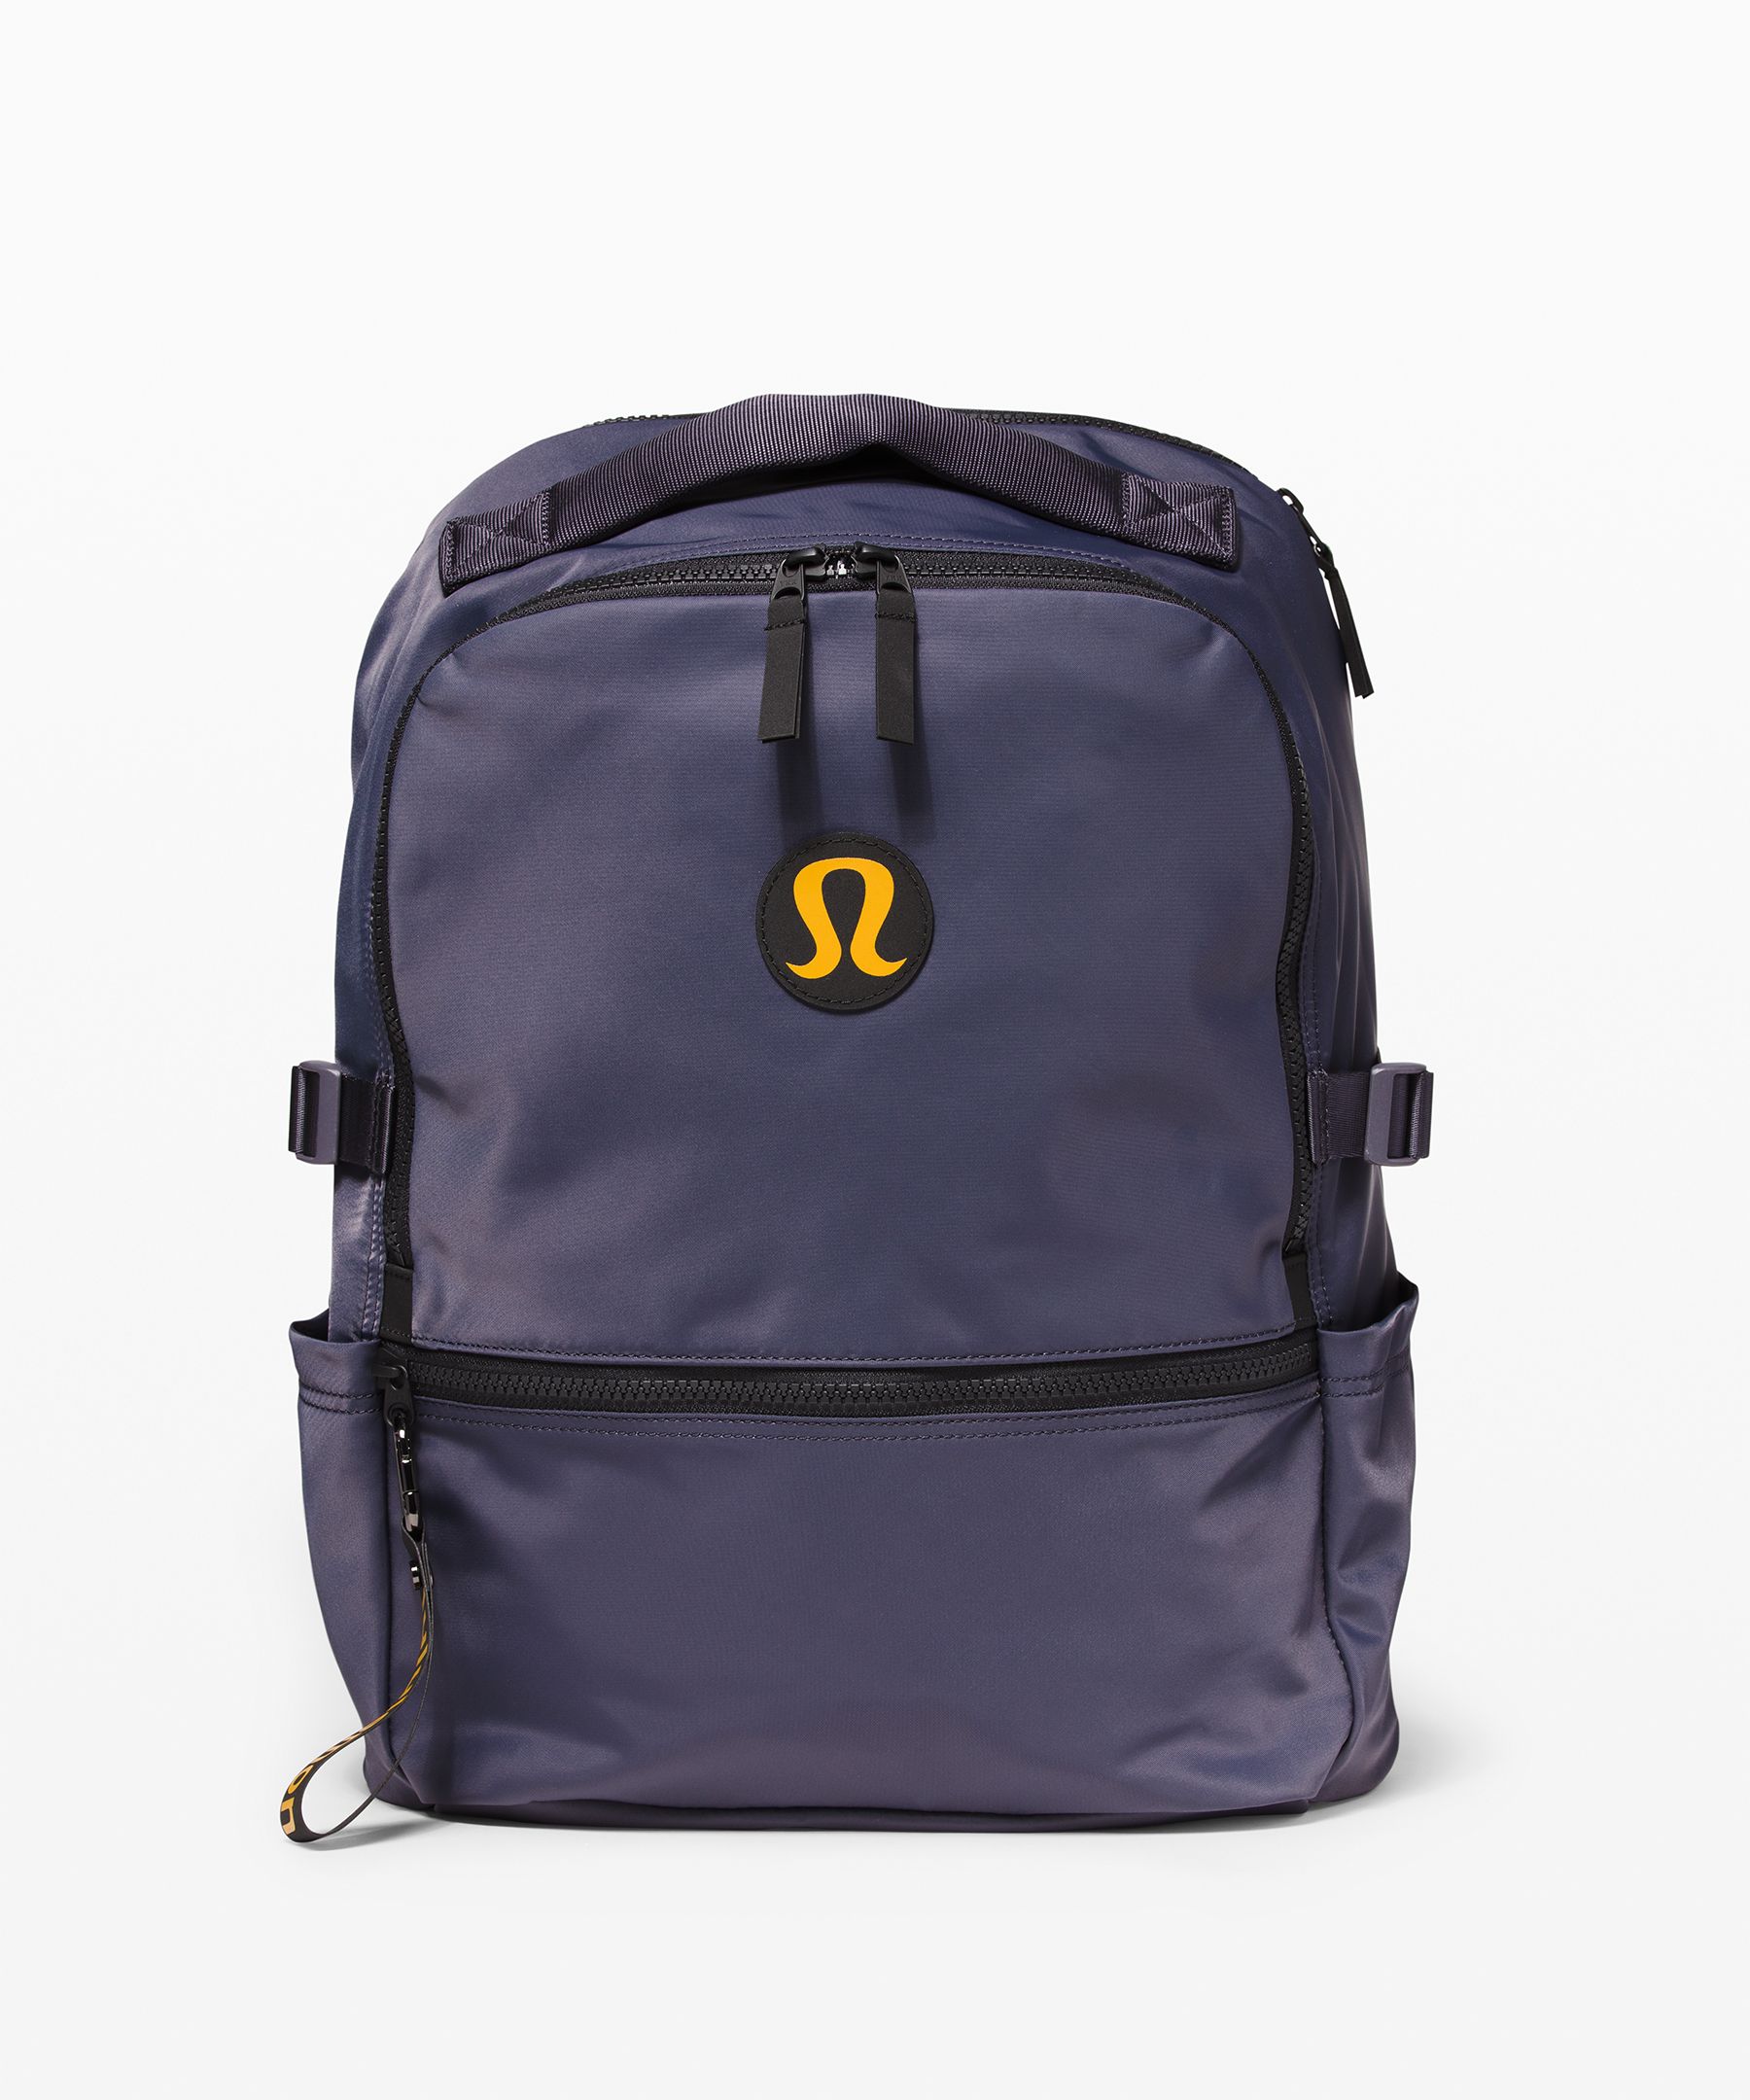 lululemon sale backpack